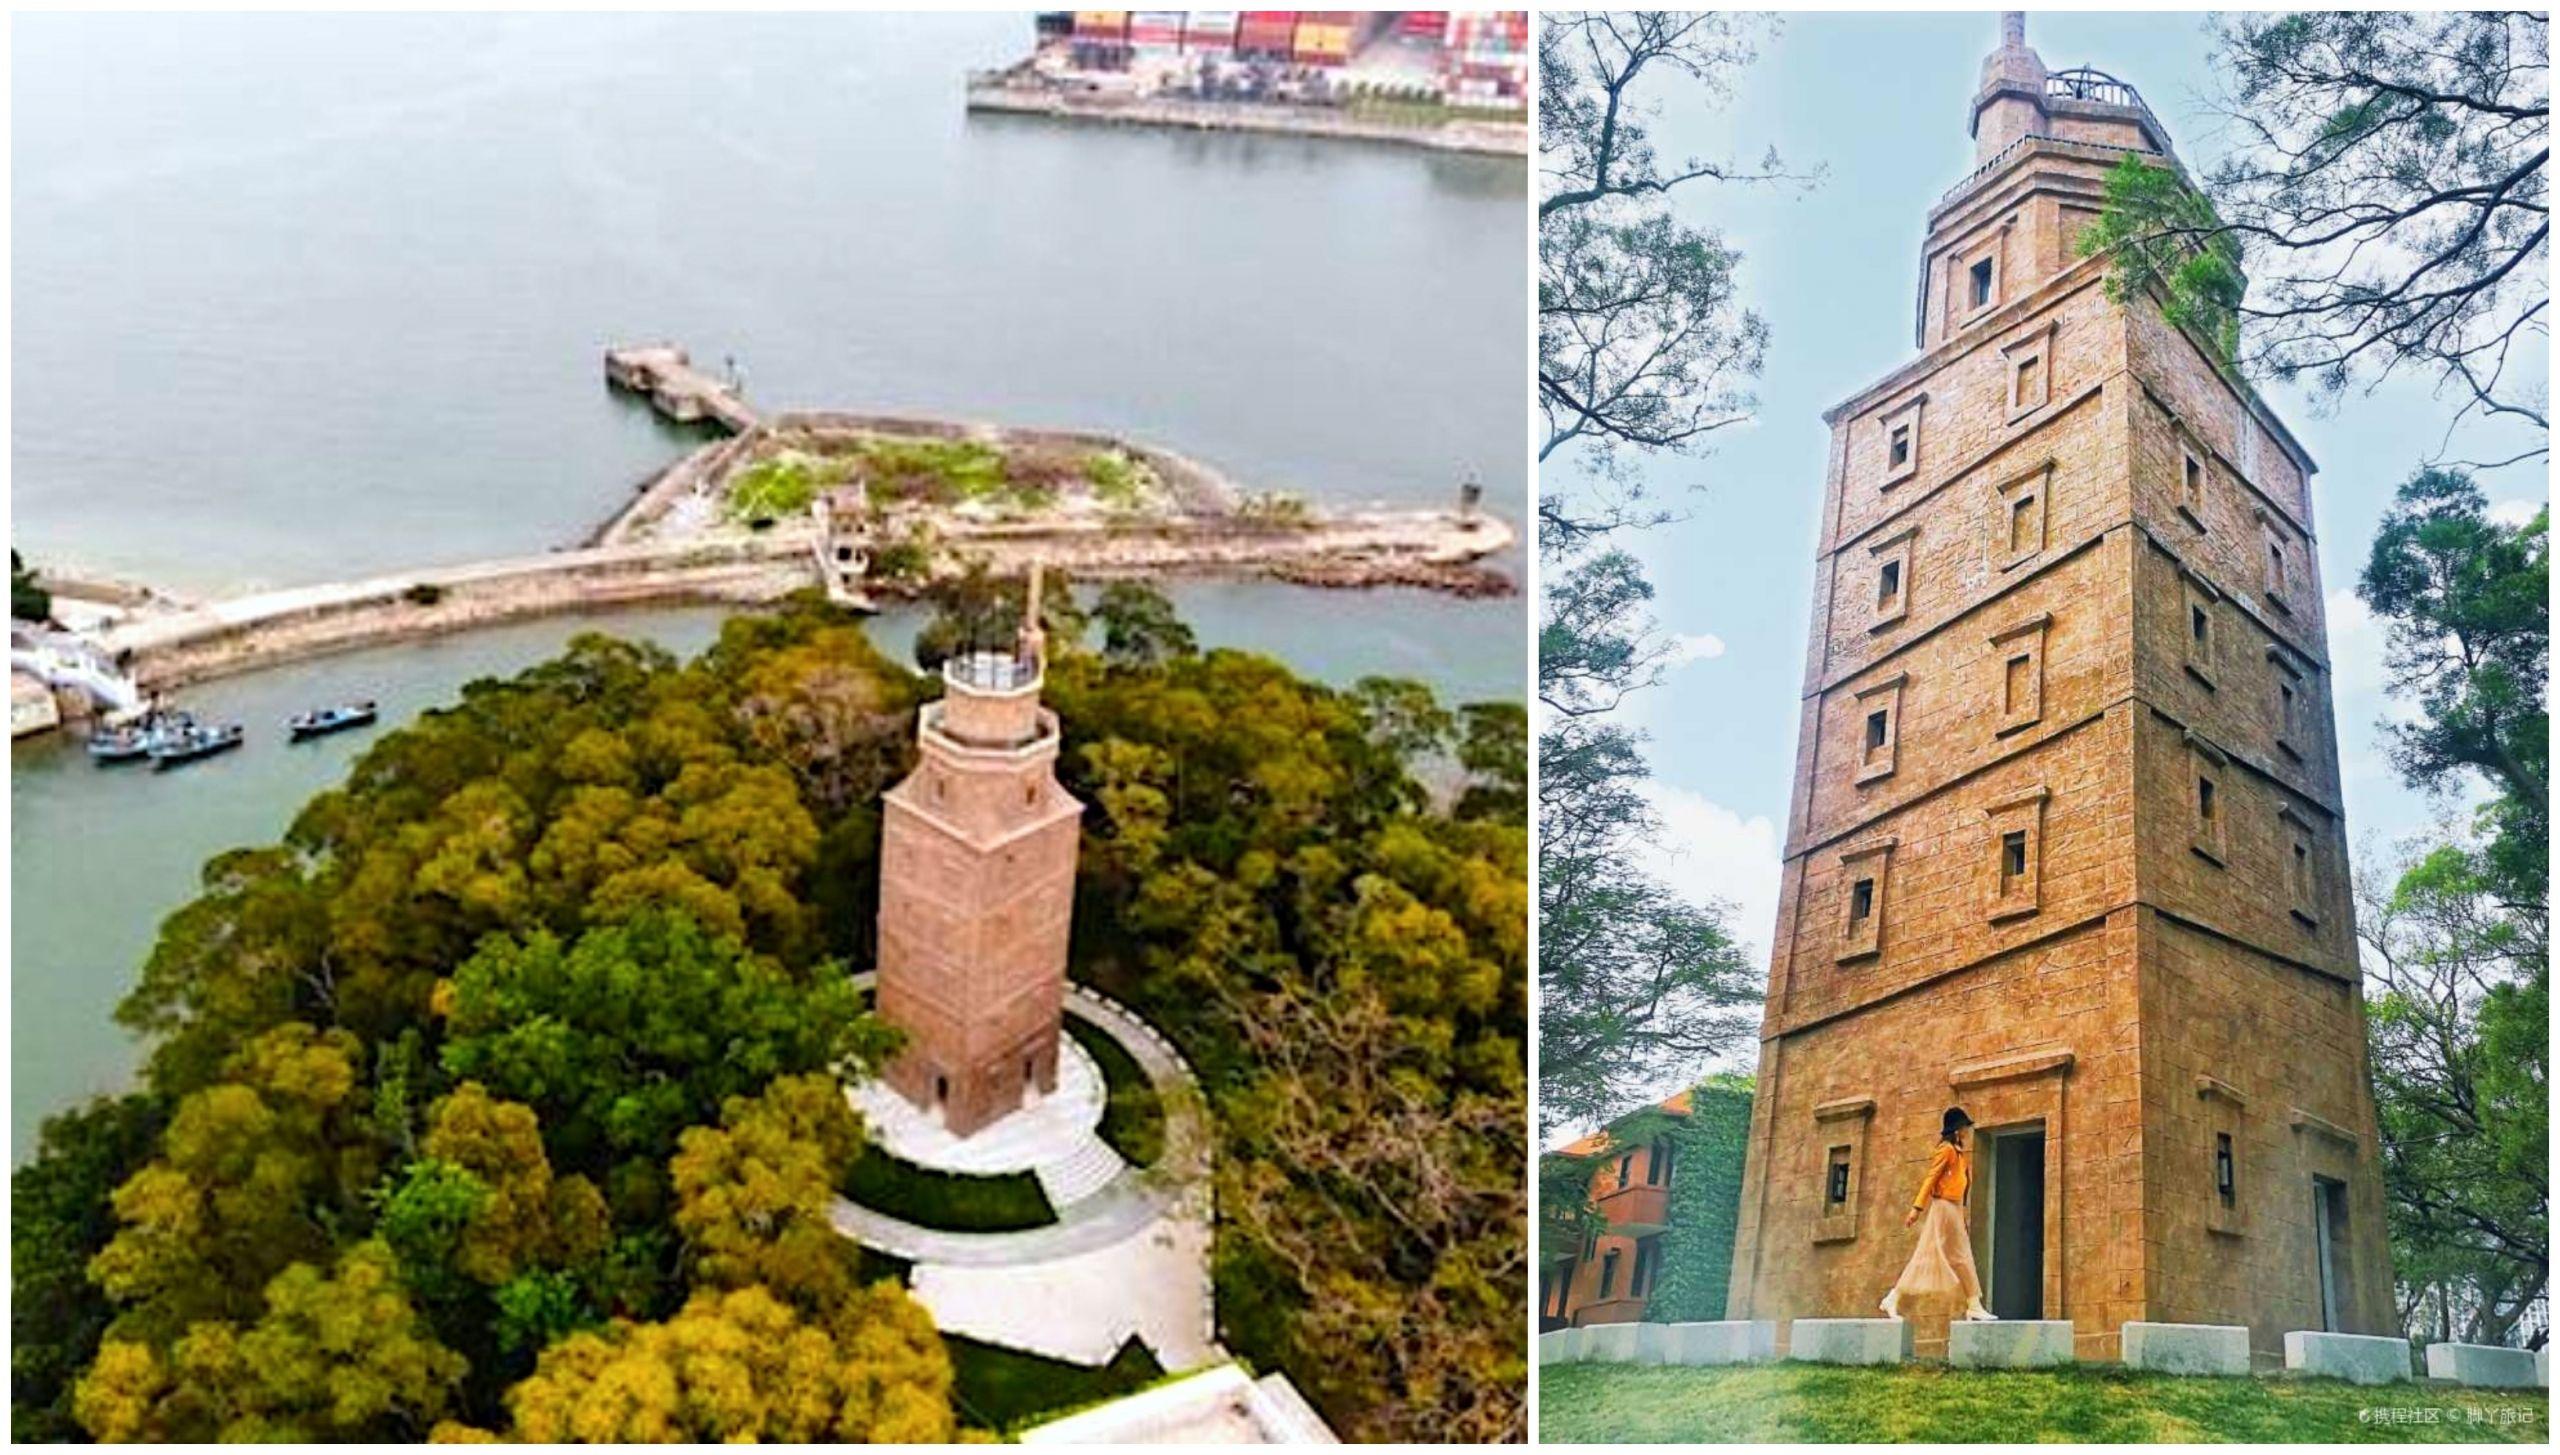 Réplica de la Torre de Hércules en China. Foto: Sina.com